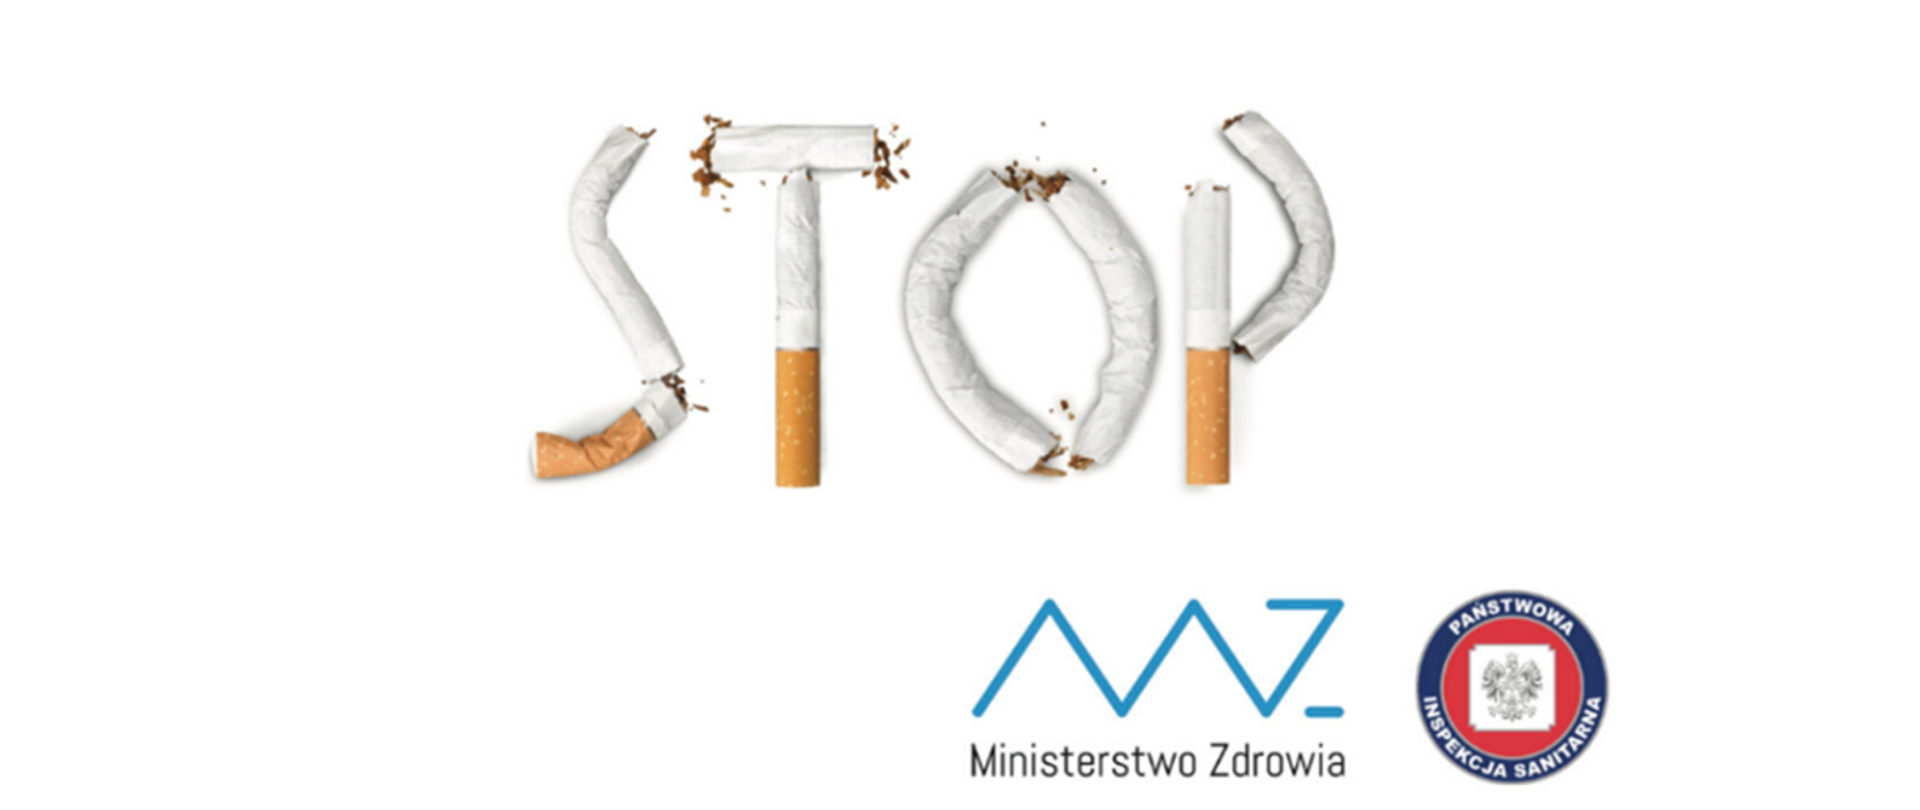 Obrazek przedstawiający połamane papierosy